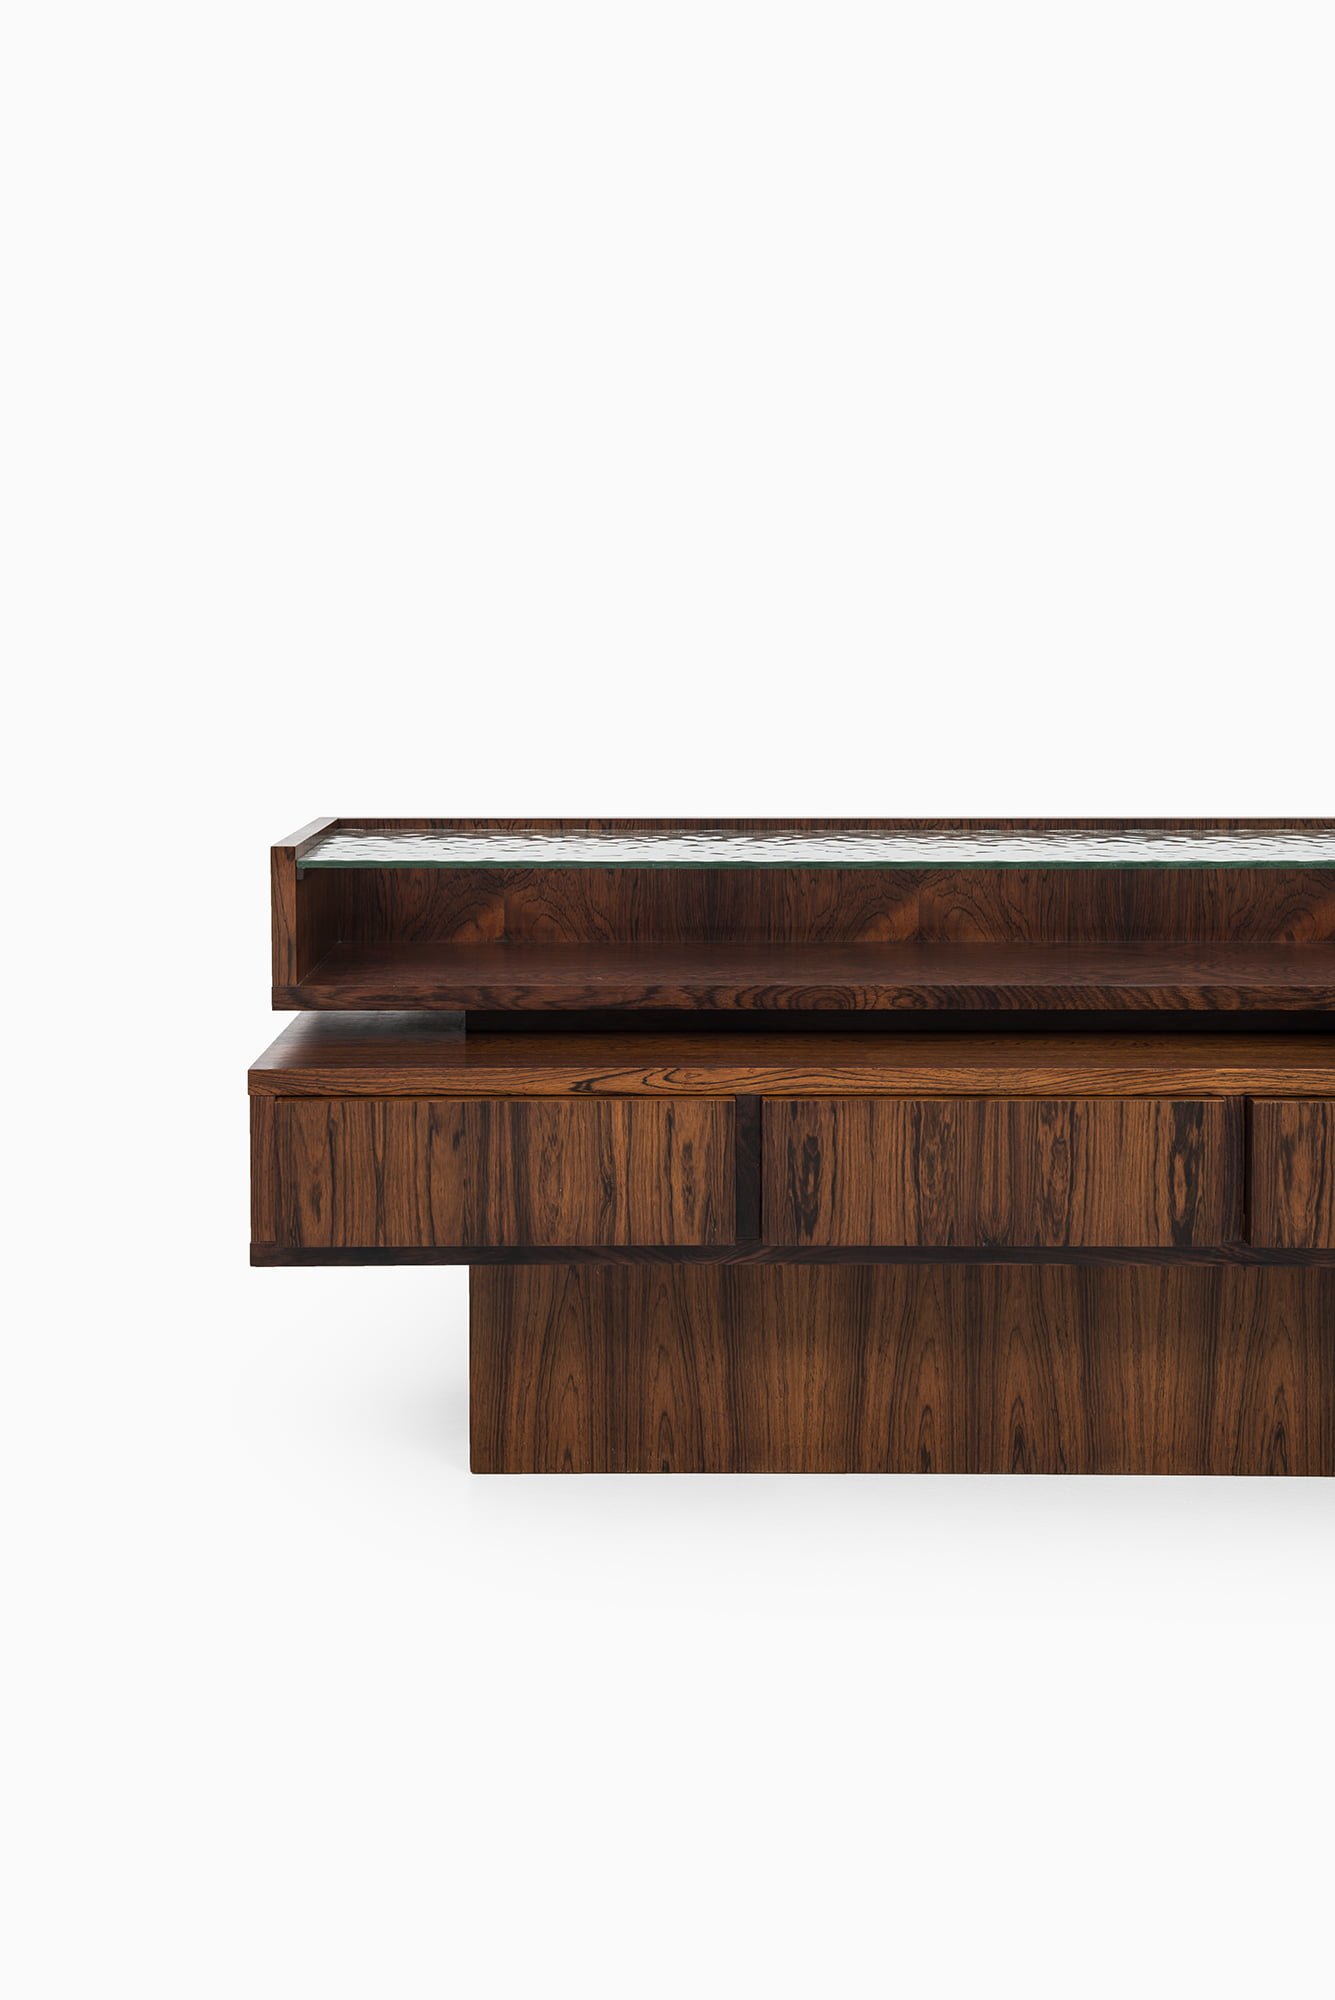 Rosewood drawer in the manner of Ib Kofod-Larsen at Studio Schalling